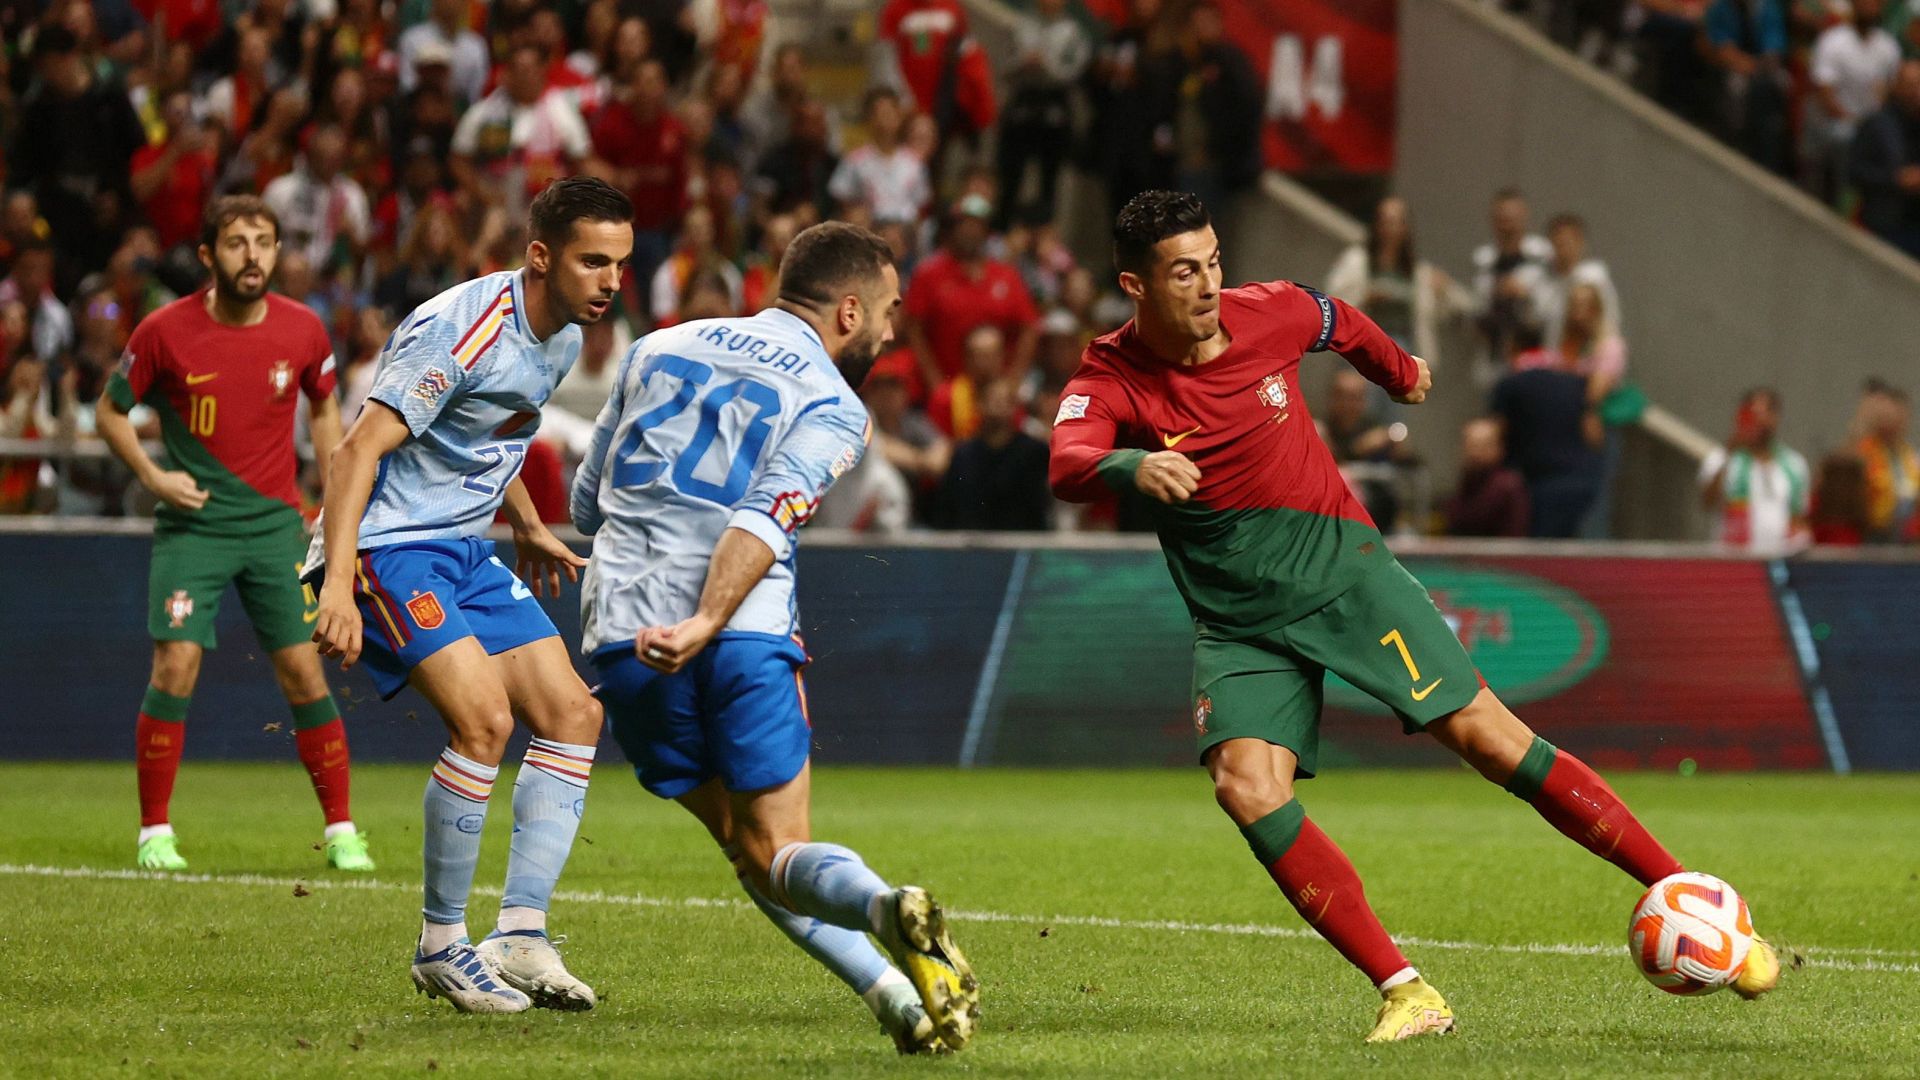 ¿Cuánto quedó el partido de Portugal vs España